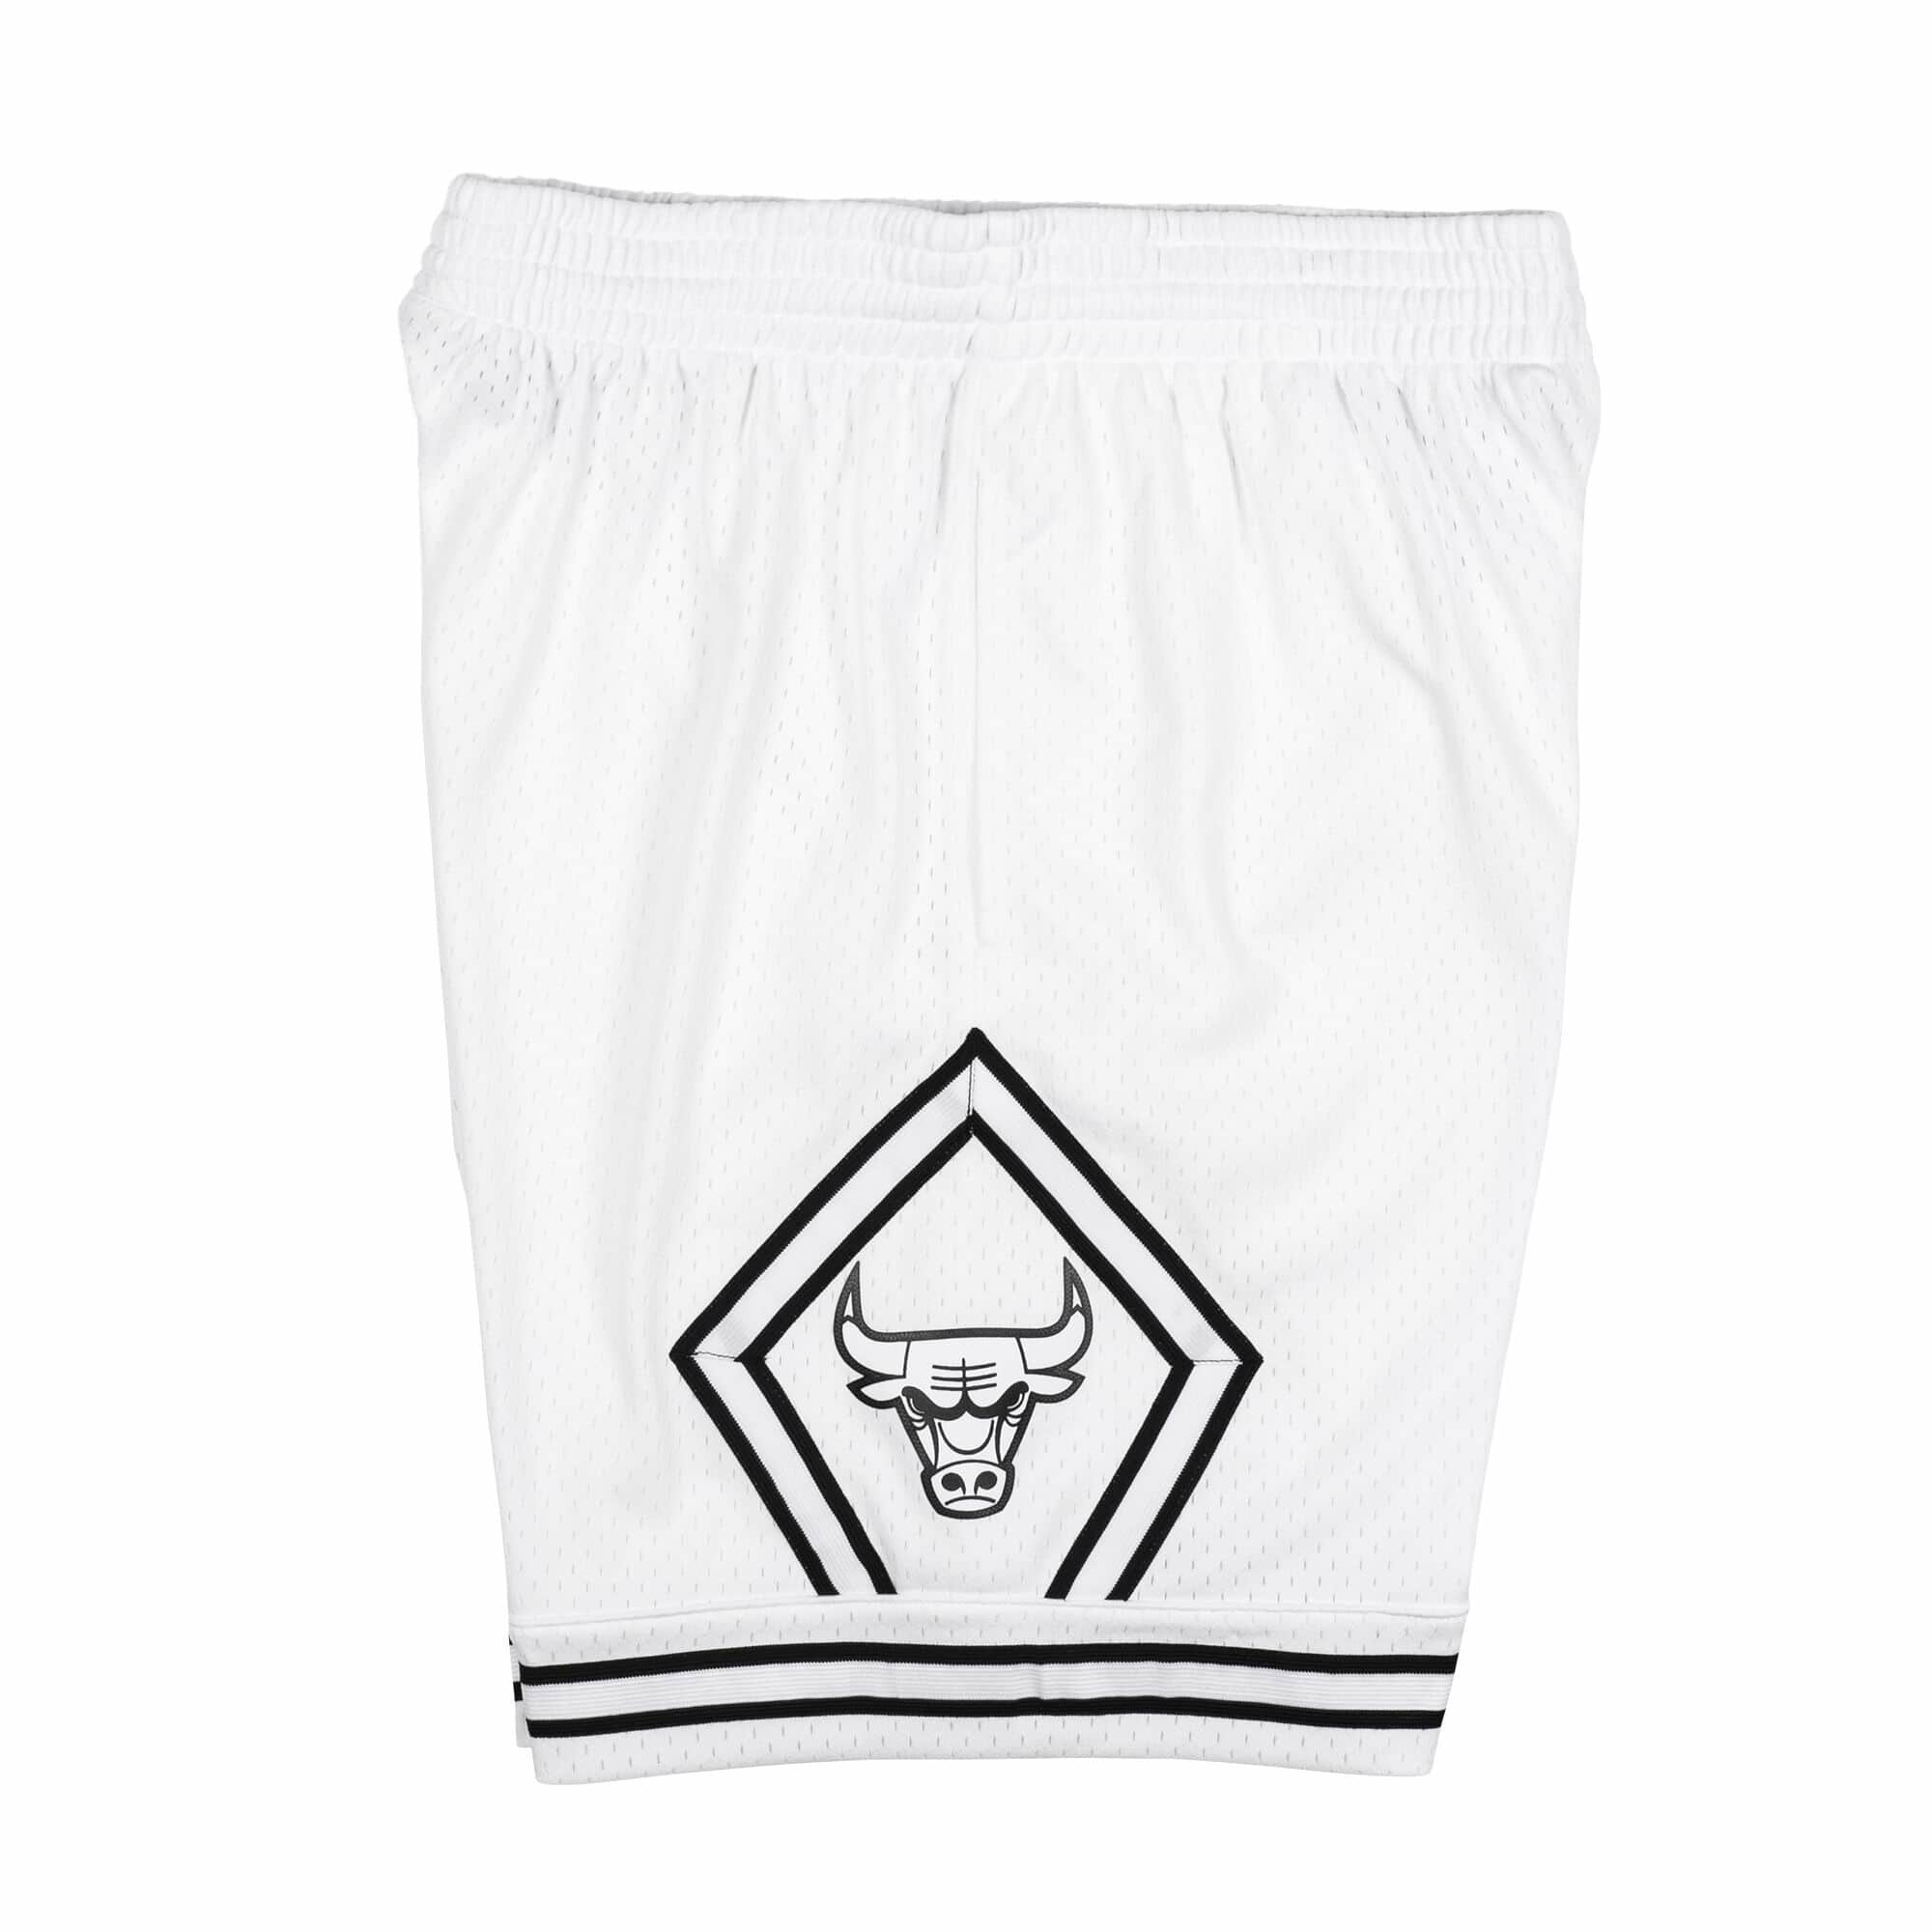 Mitchell & Ness Men's Shorts - White - XL